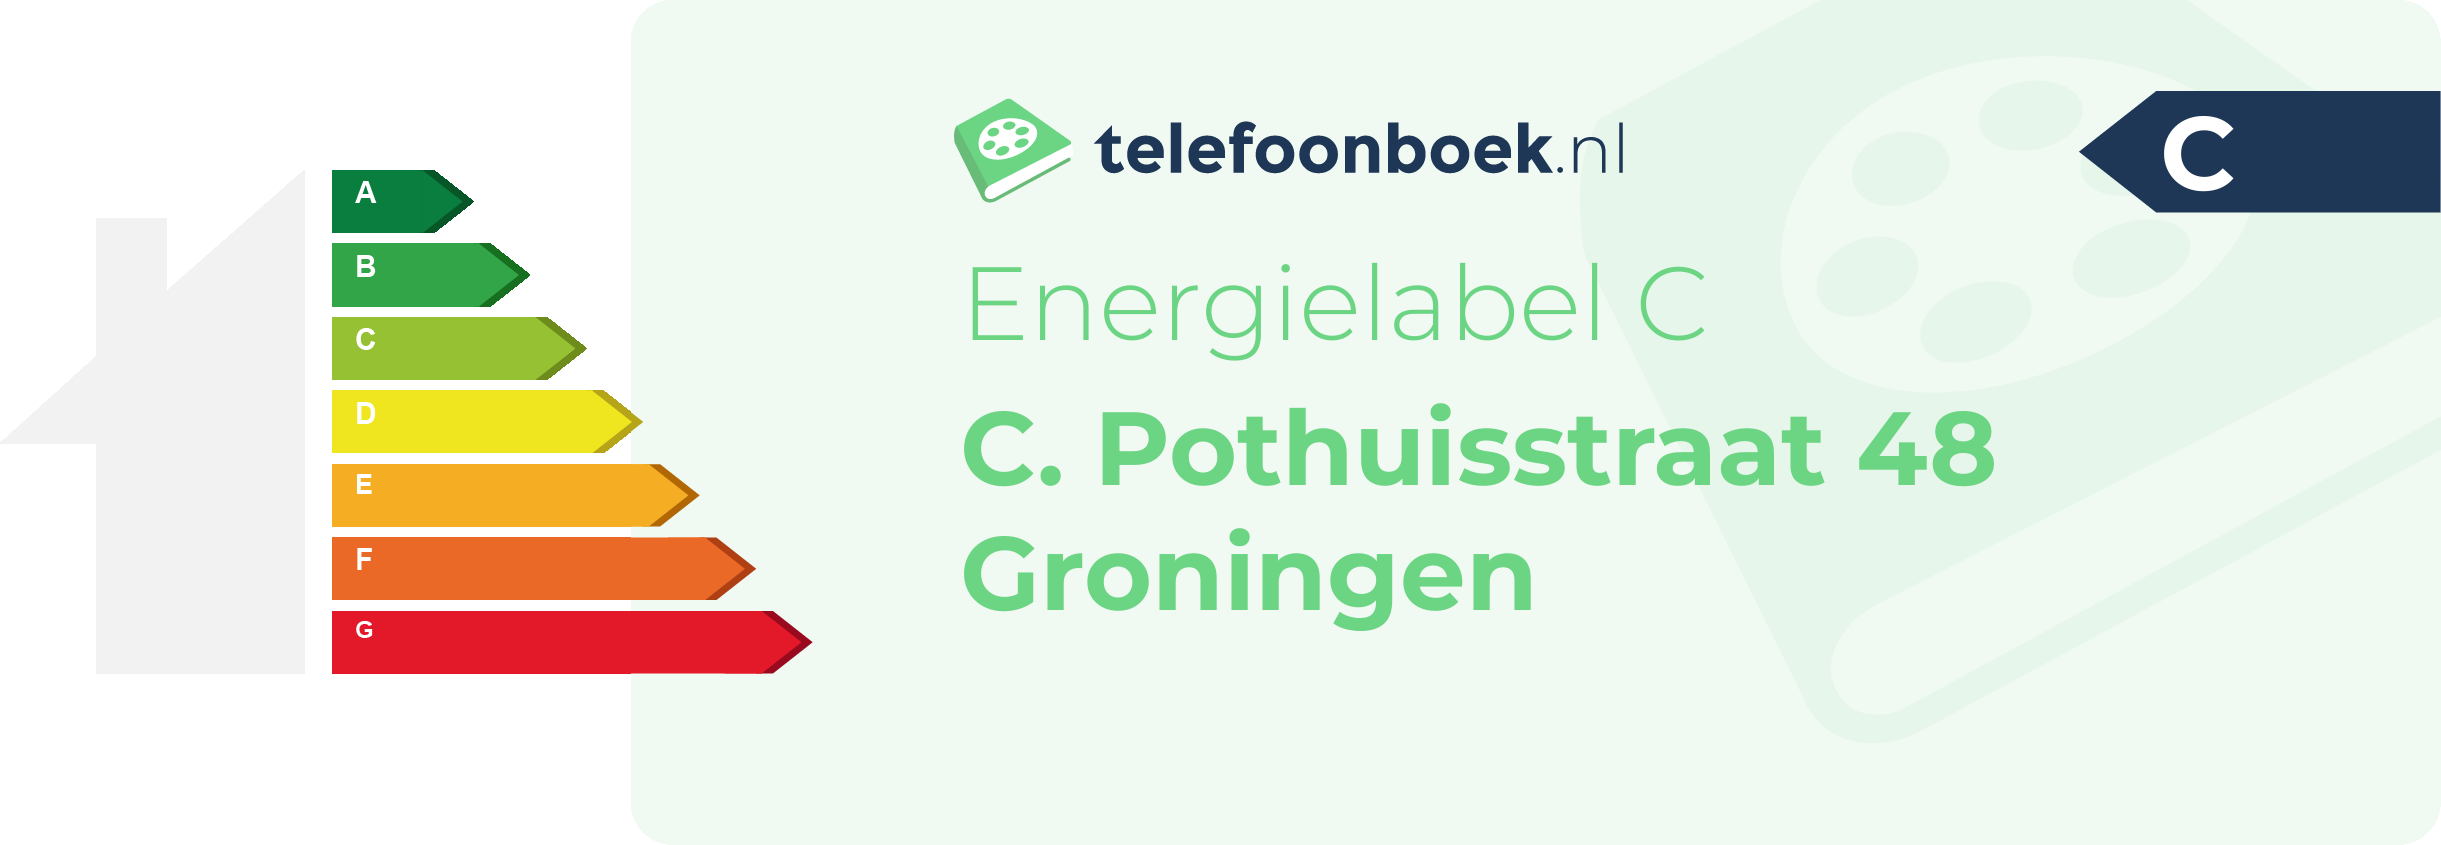 Energielabel C. Pothuisstraat 48 Groningen